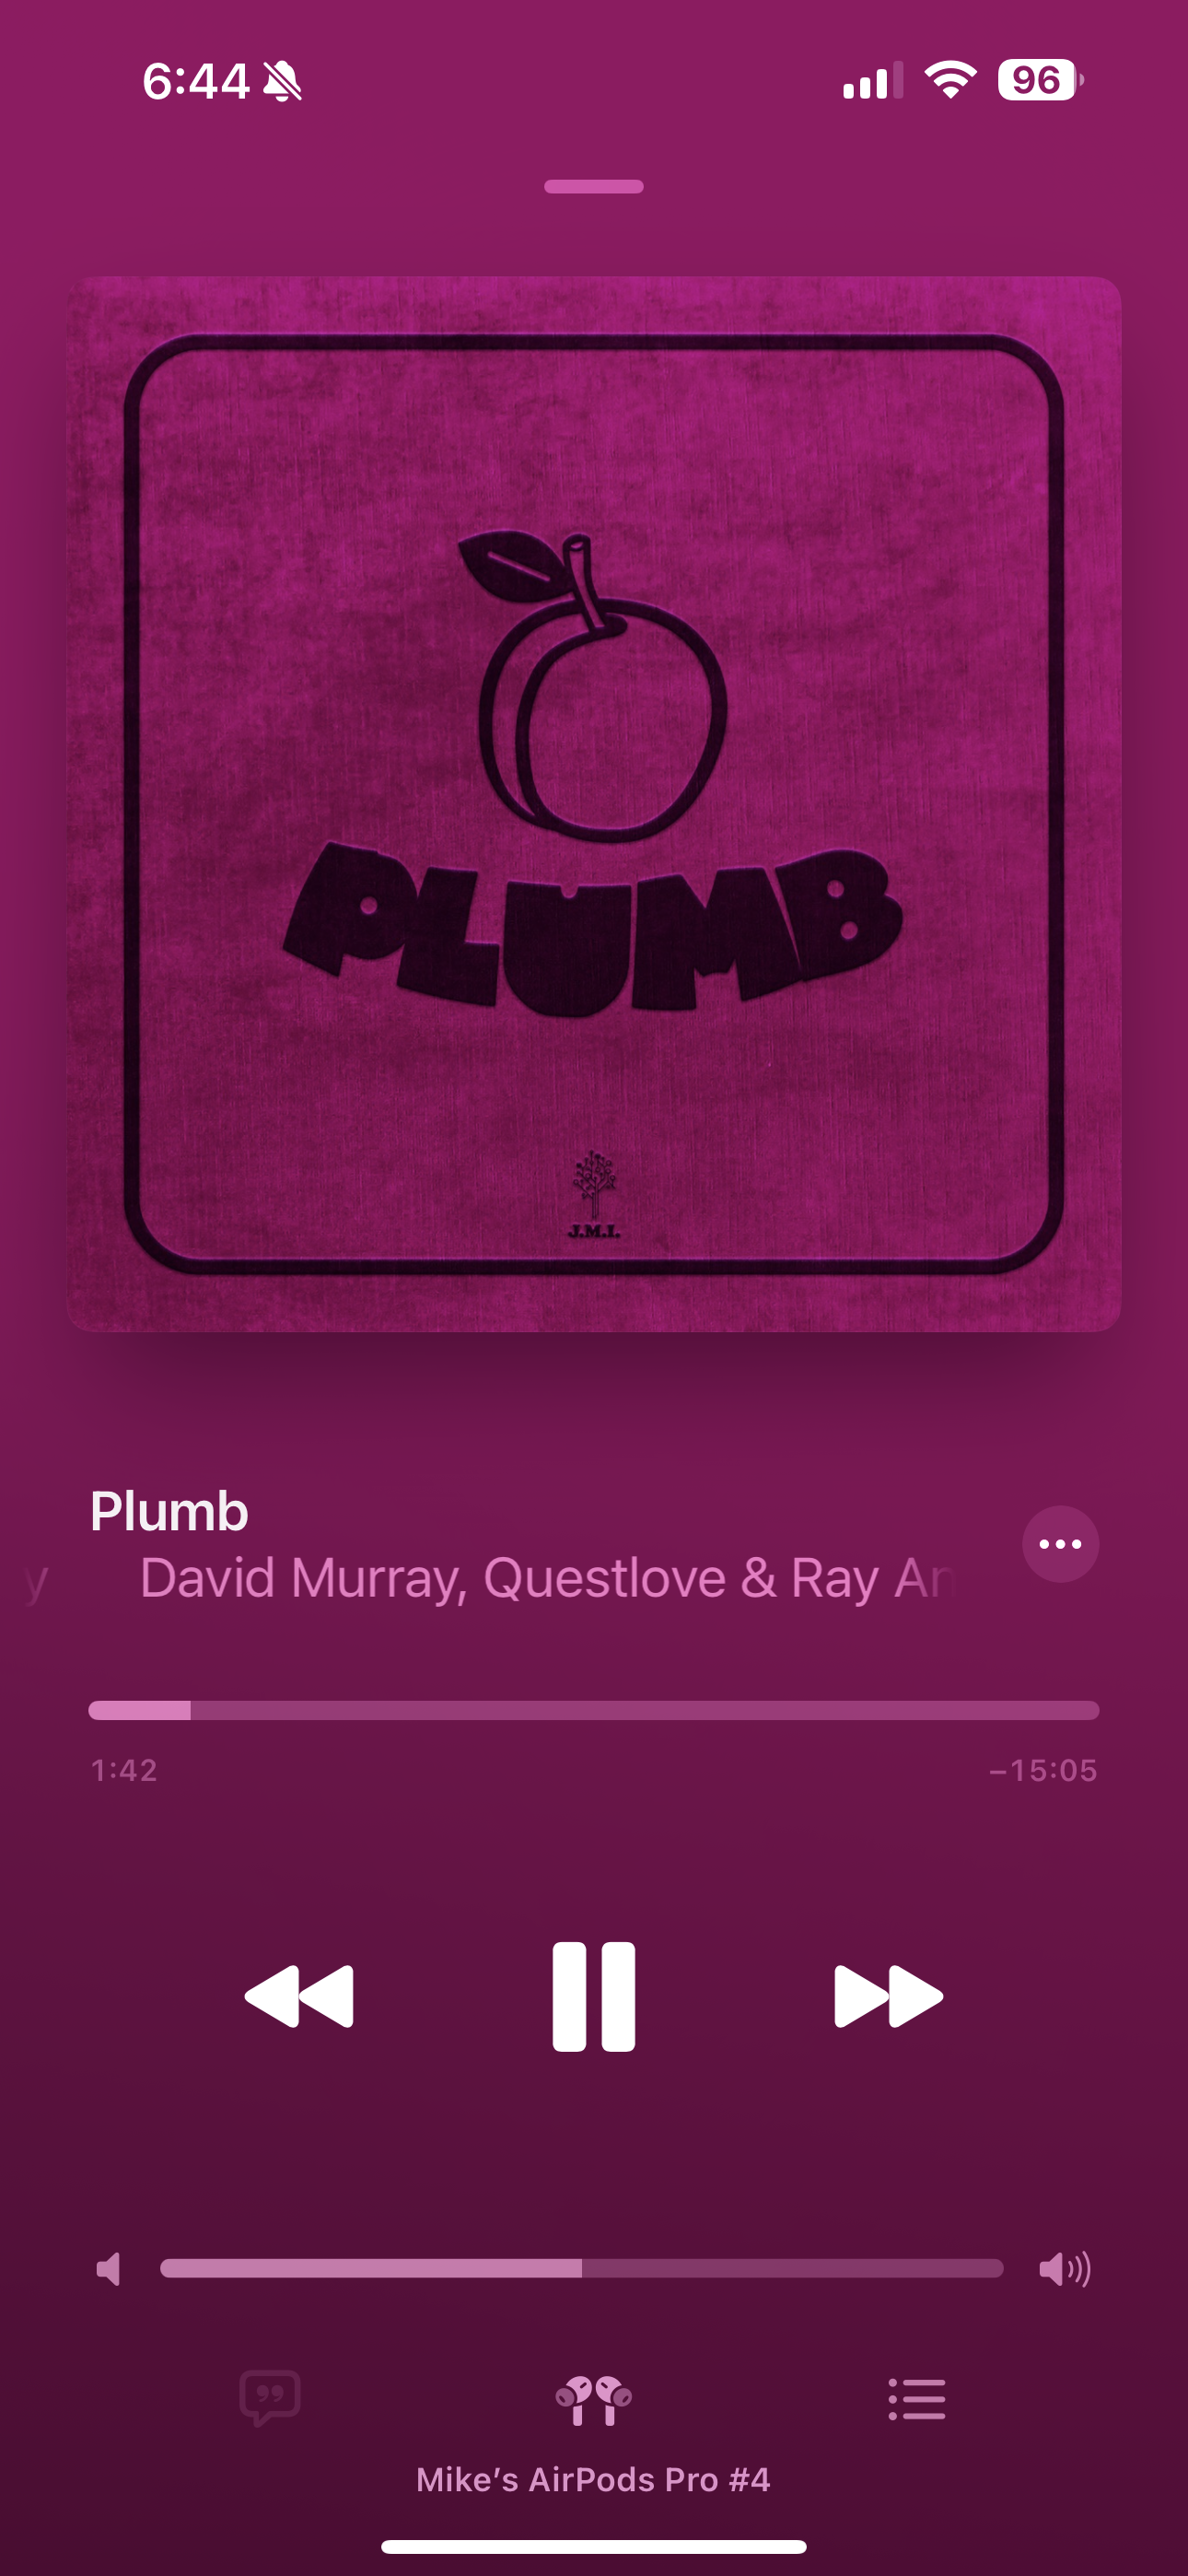 Plumb album cover in Apple Music 